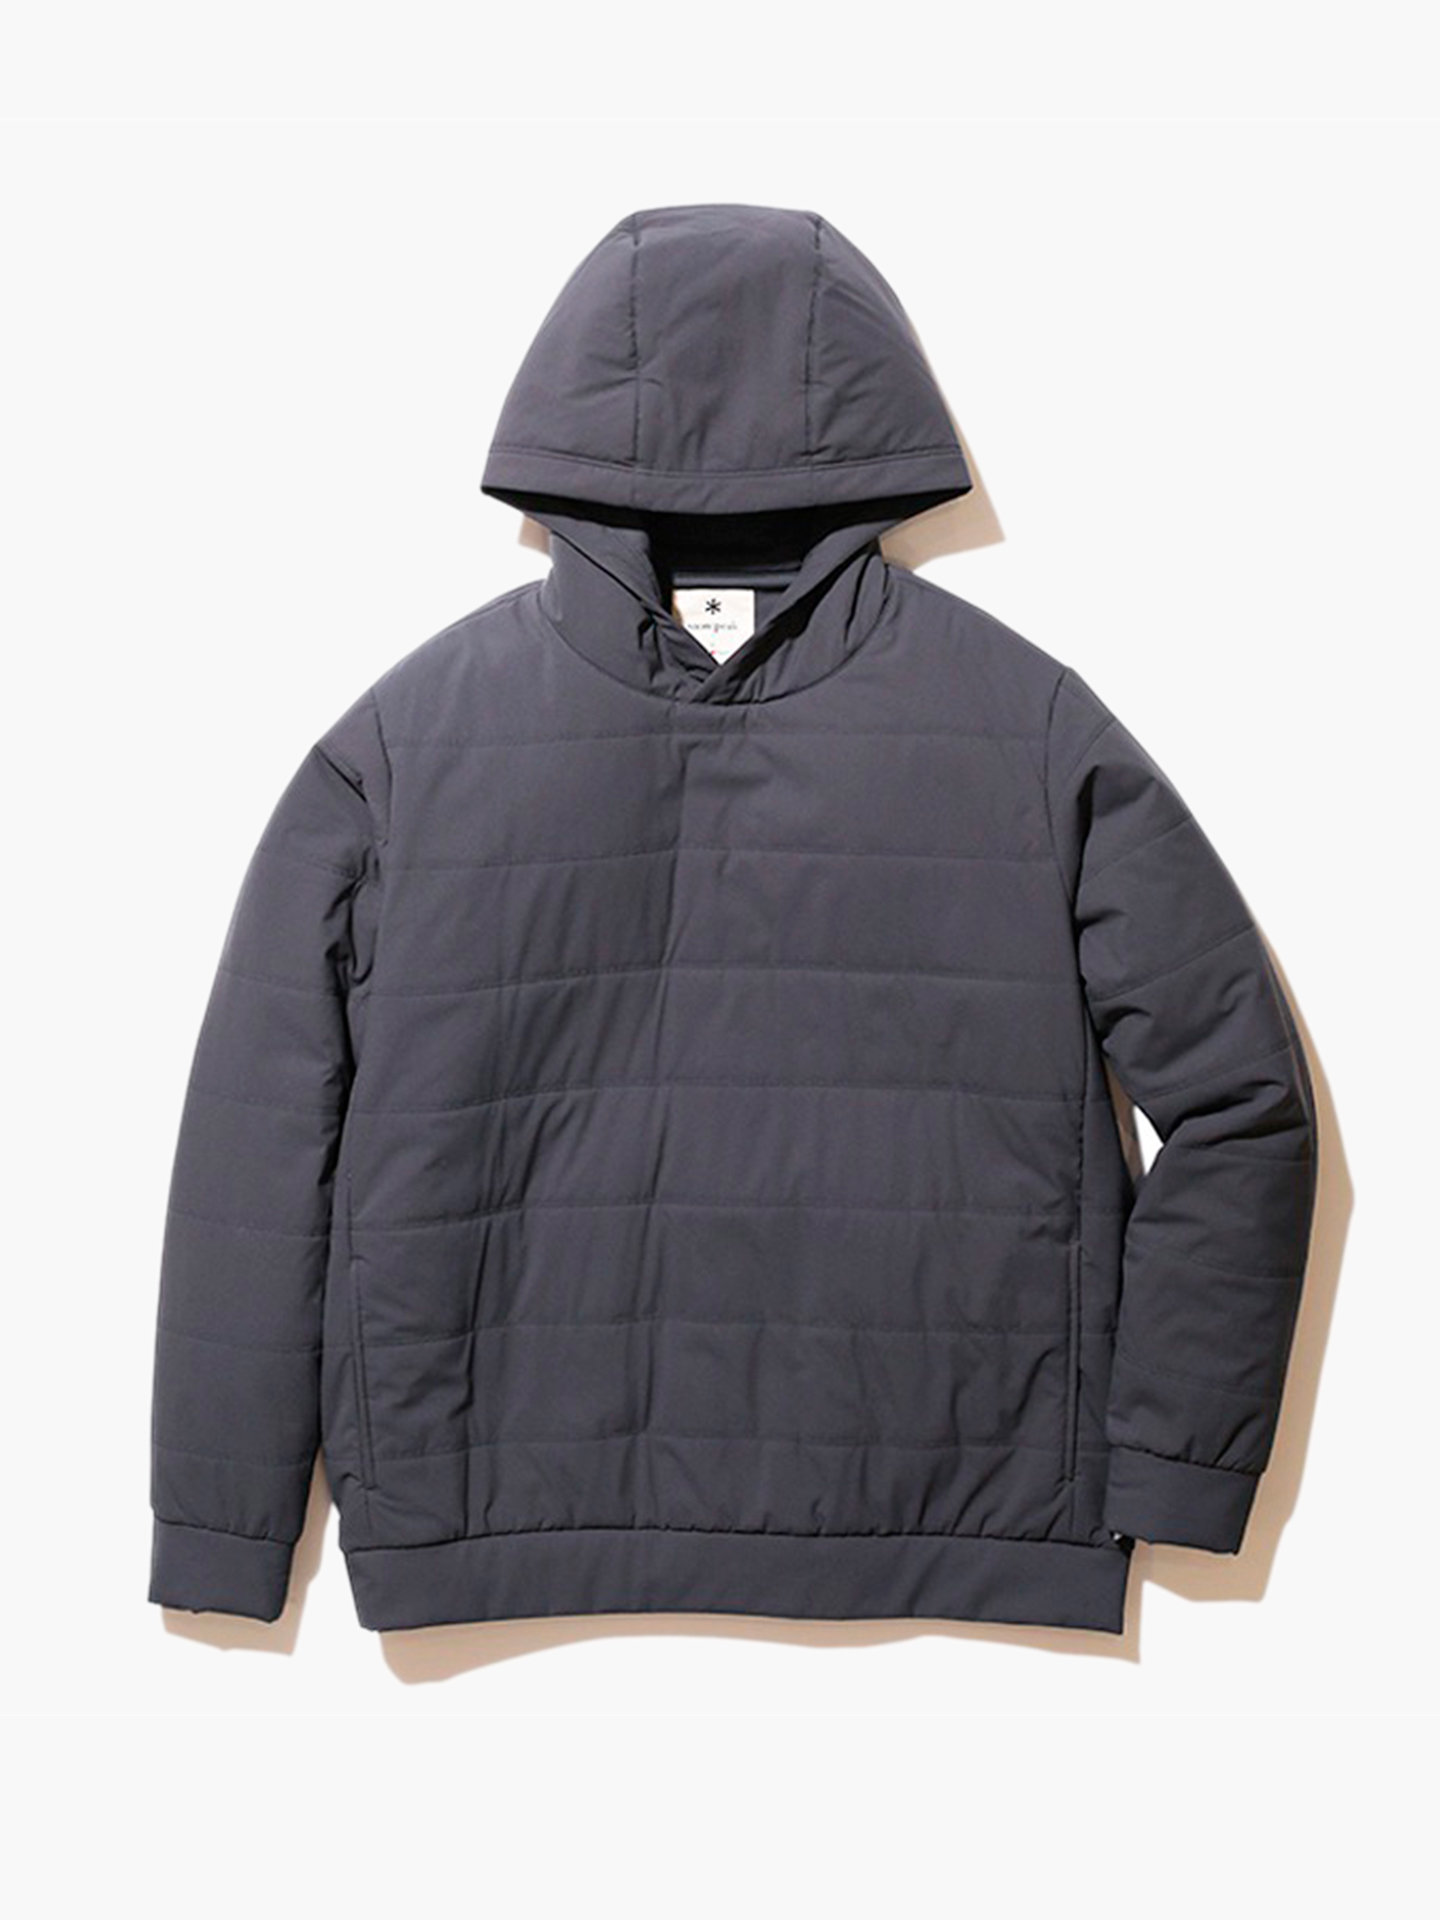 Flexible Insulated Hoodie Куртка-худи, муж, размер L, серый